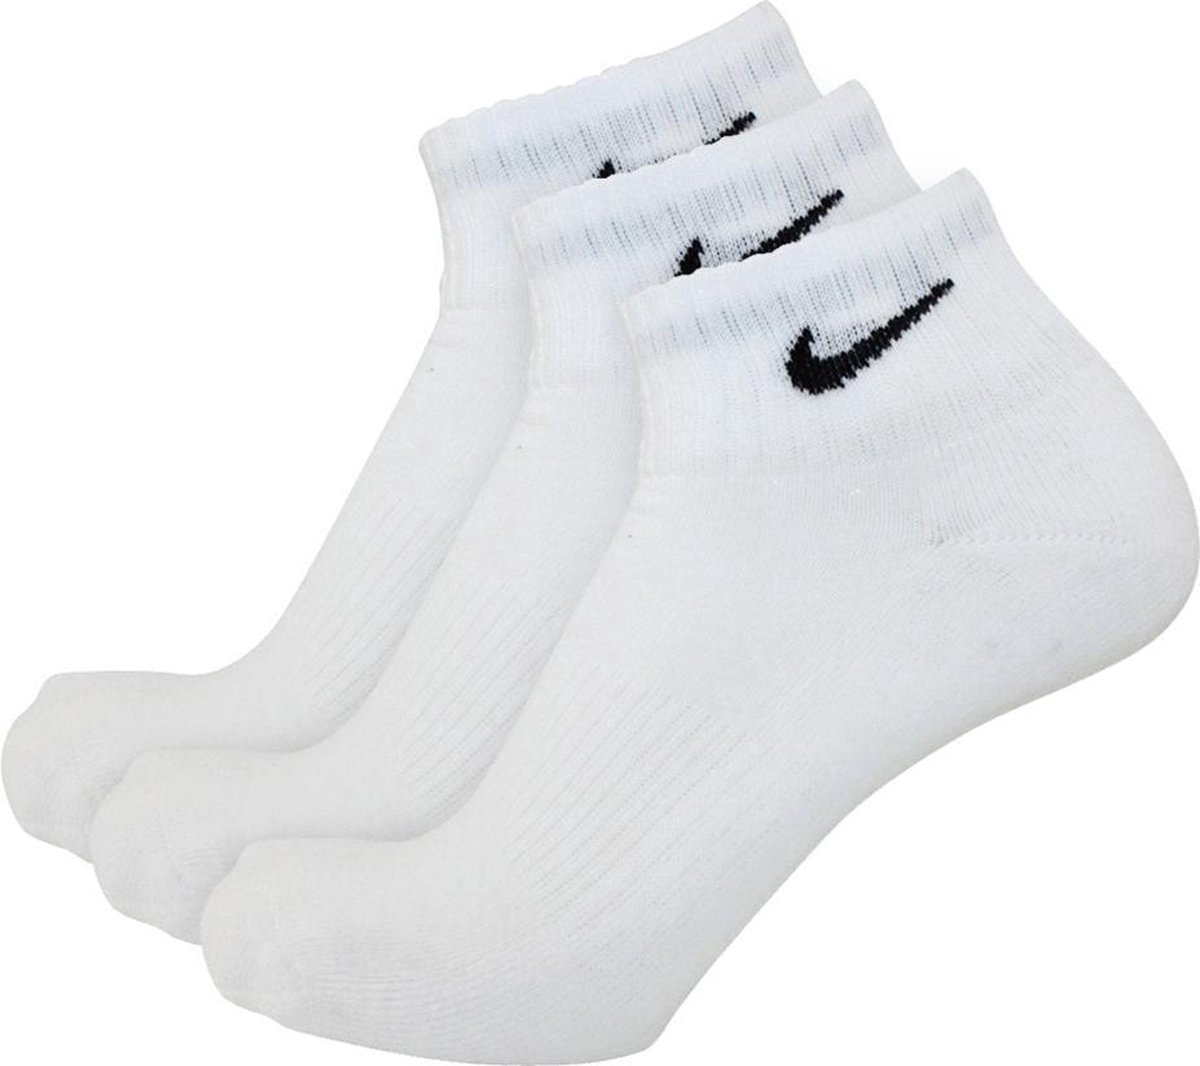 Versterken films Een bezoek aan grootouders Nike sokken half hoog 3 paar wit-46/50 | bol.com